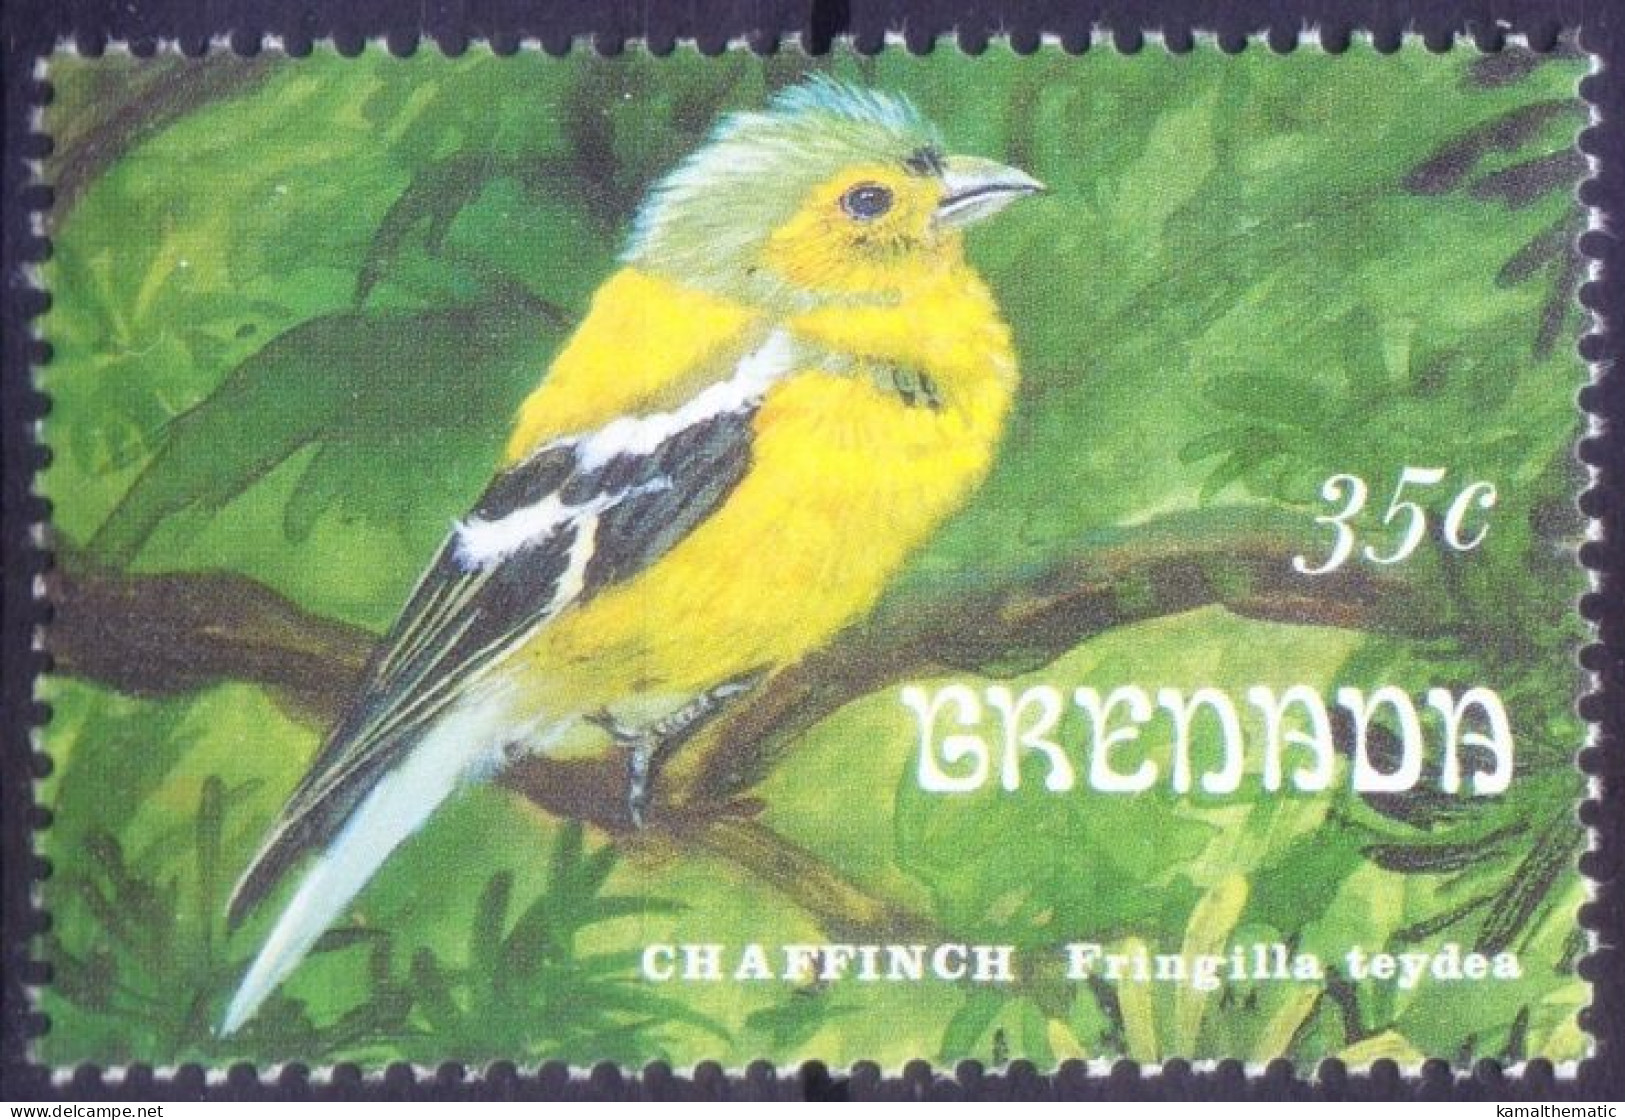 Common Chaffinch, Song Birds, Grenada 1993 MNH - - Sperlingsvögel & Singvögel